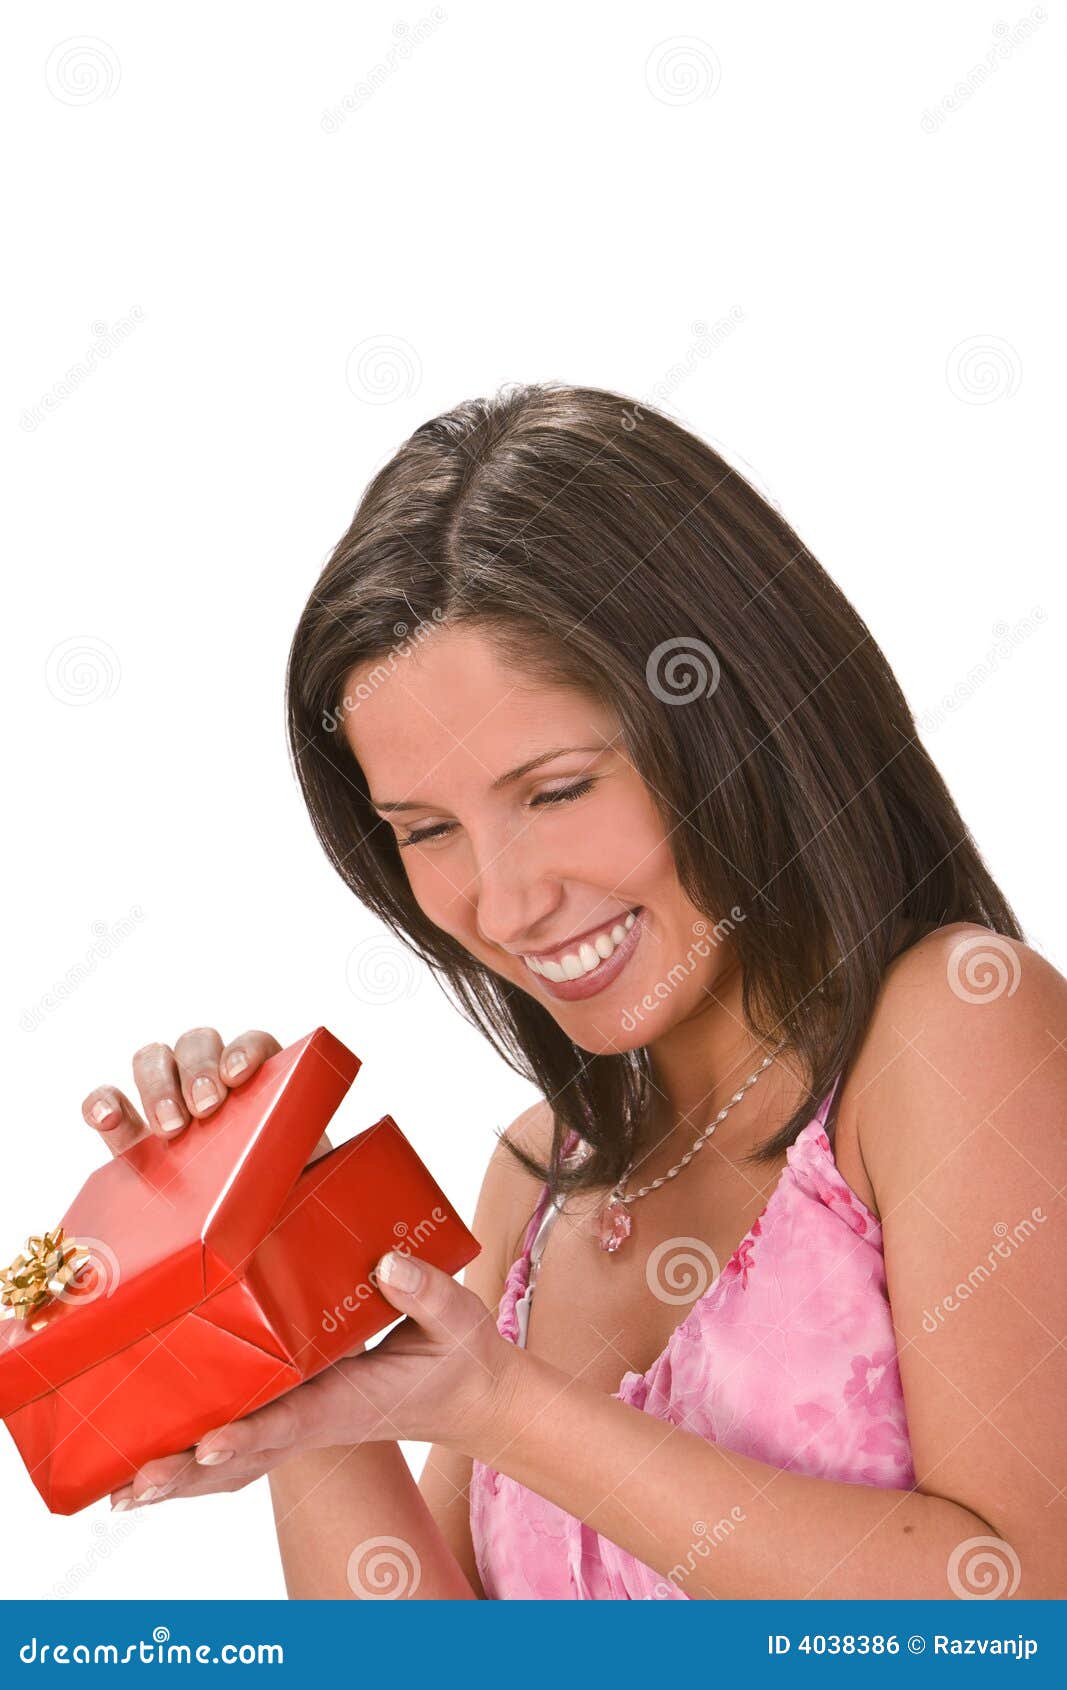 Happiness. 美丽的配件箱深色的礼品愉快的空缺数目红色